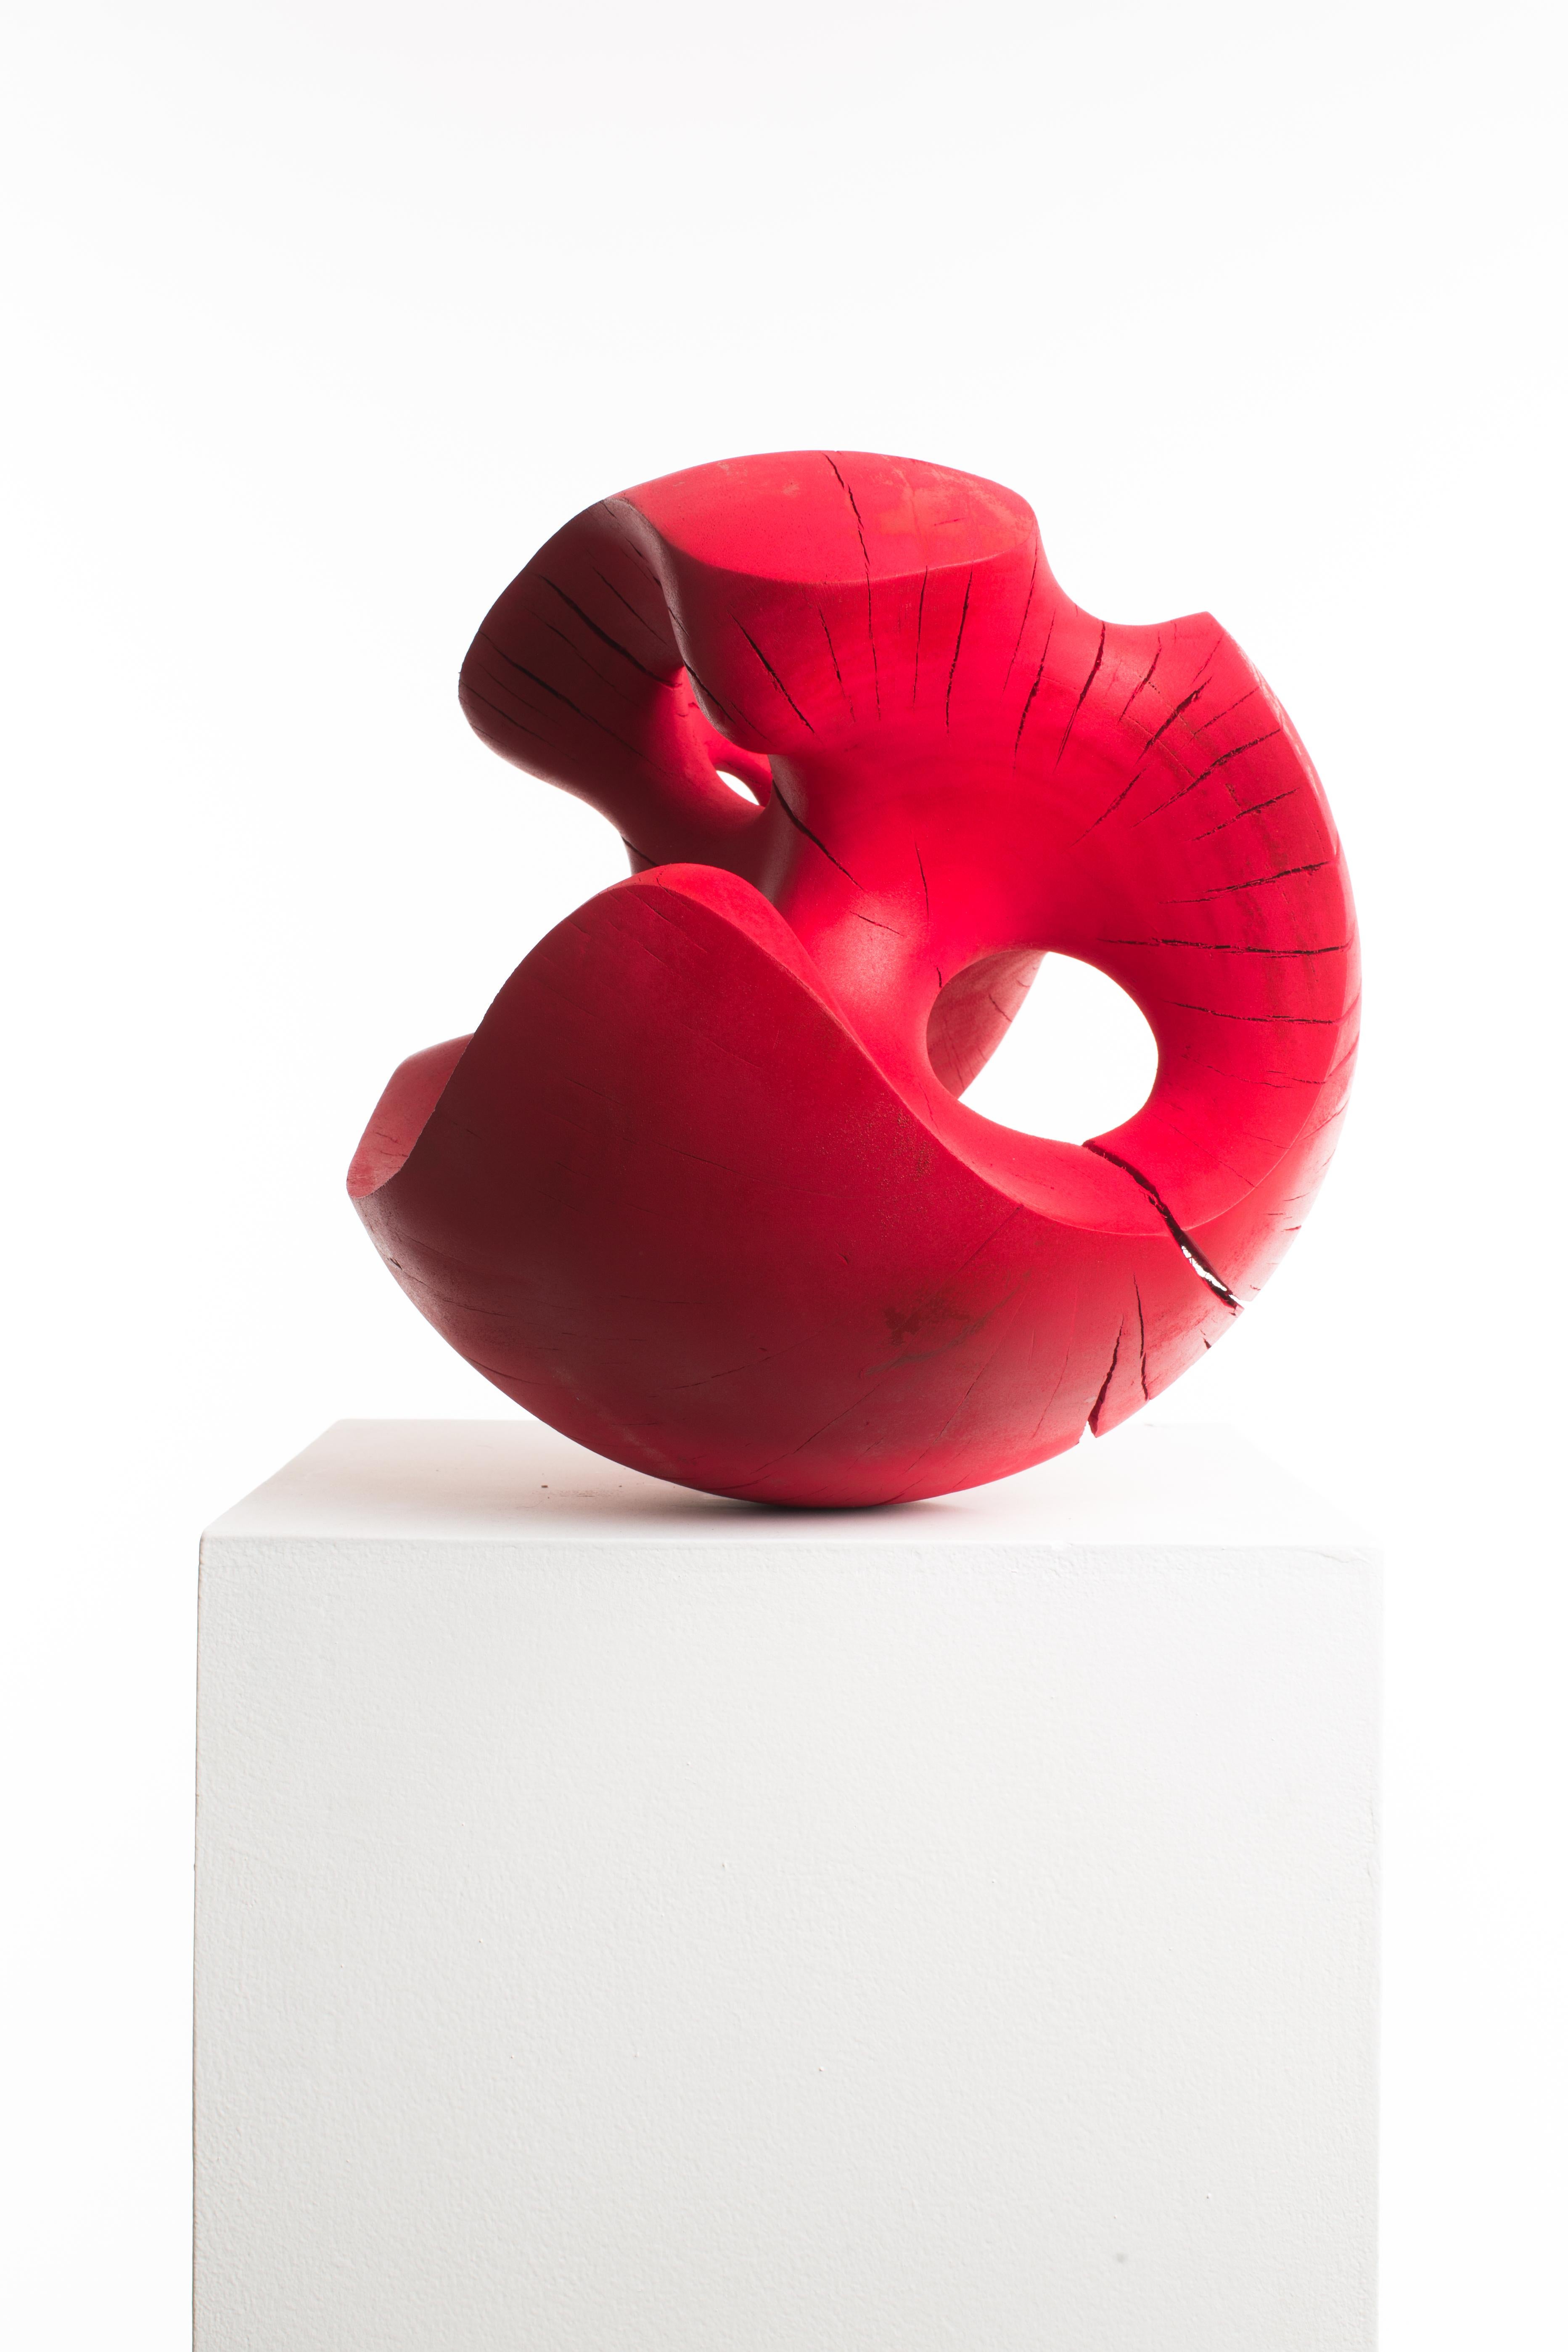 Driaan Claassen For Reticence, Abstract Geometric Sculpture, Wooden Sphere 007 1